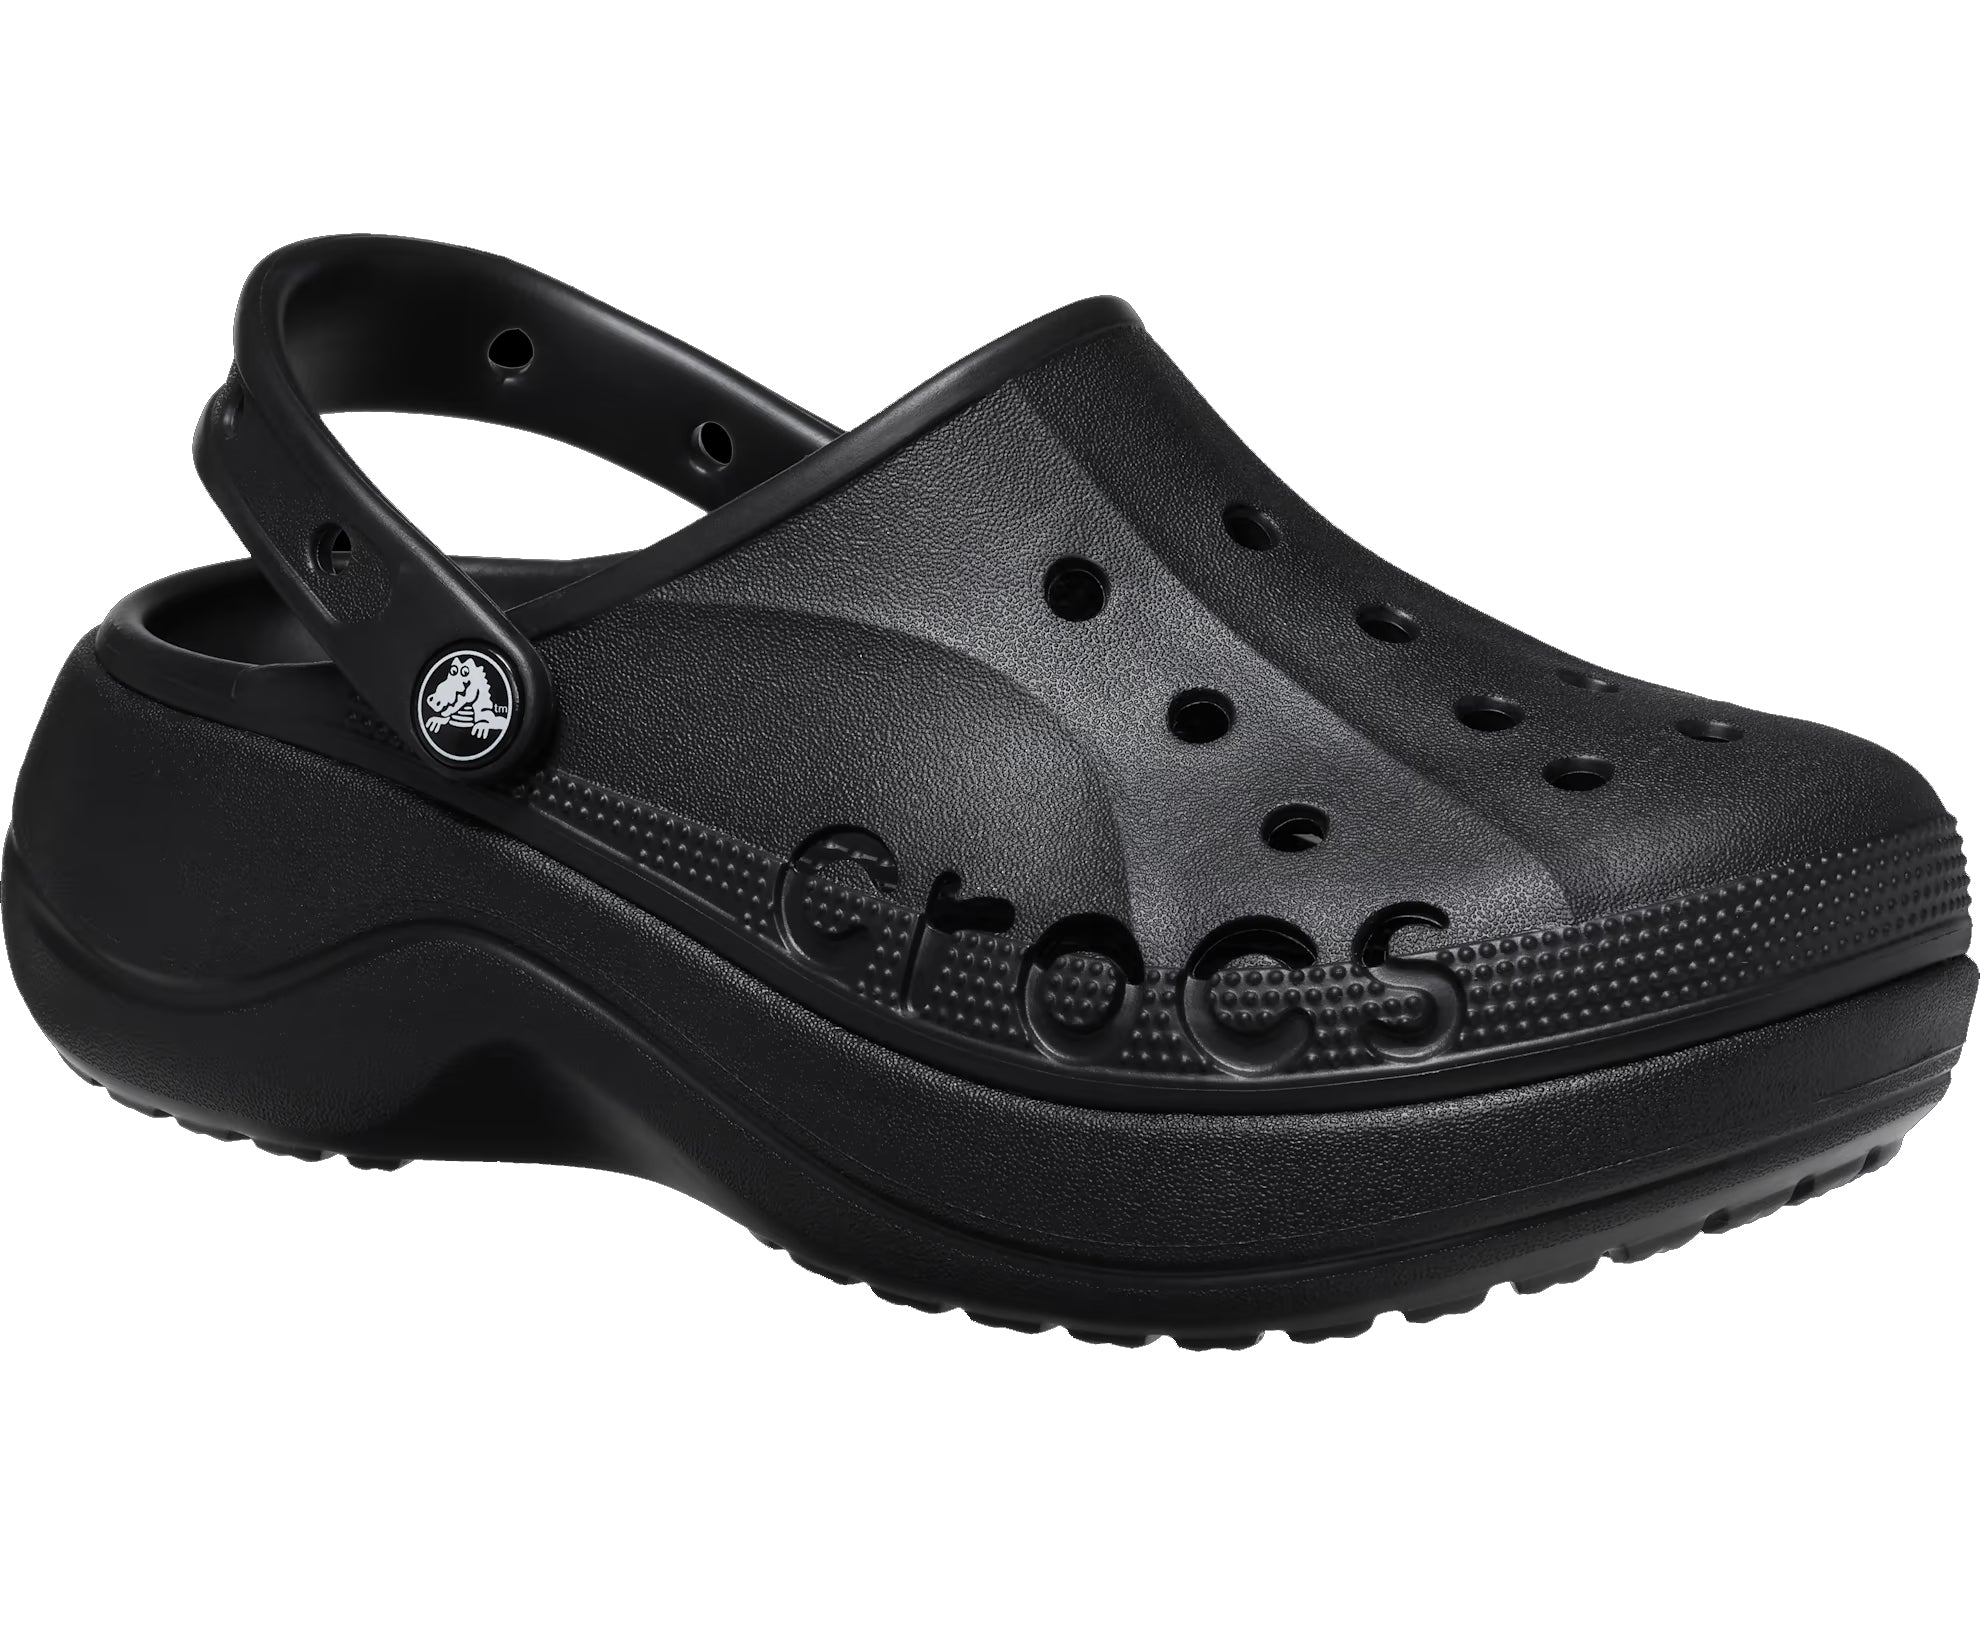 Authentic Crocs Baya Platform Clog - Black